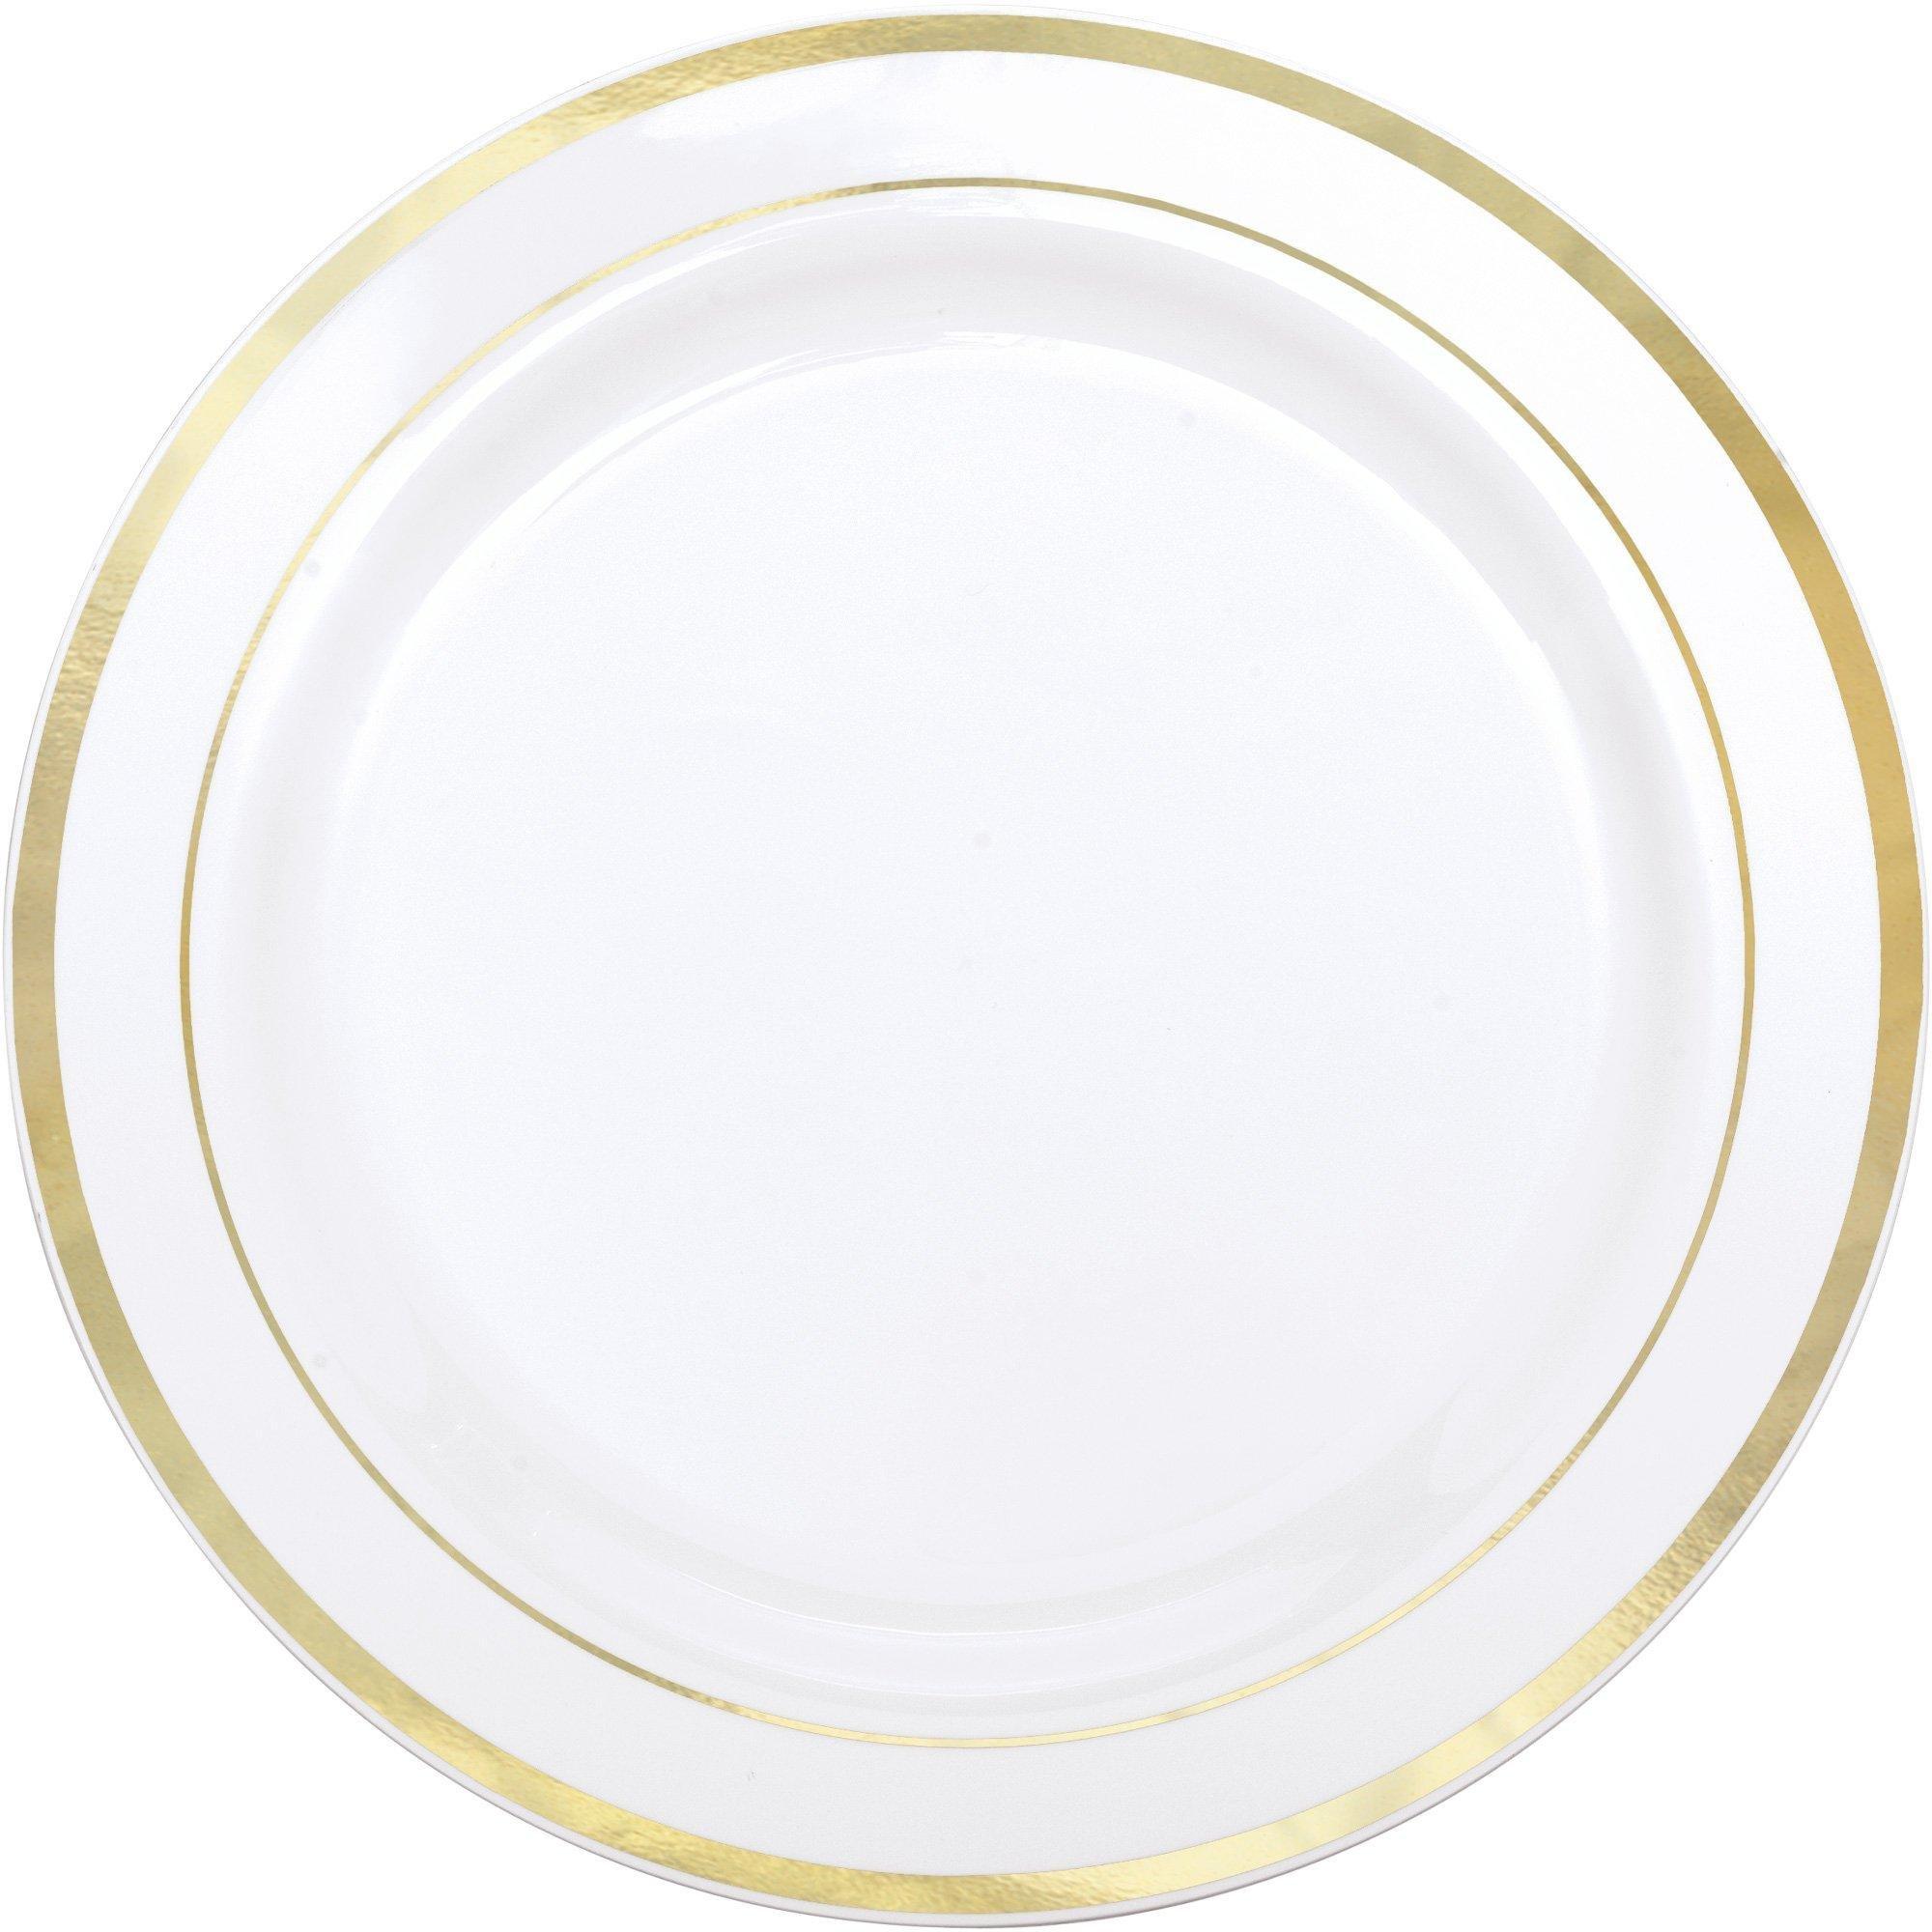 White With Rim Premium Plastic Dinner Plates, 10.25in, 20ct